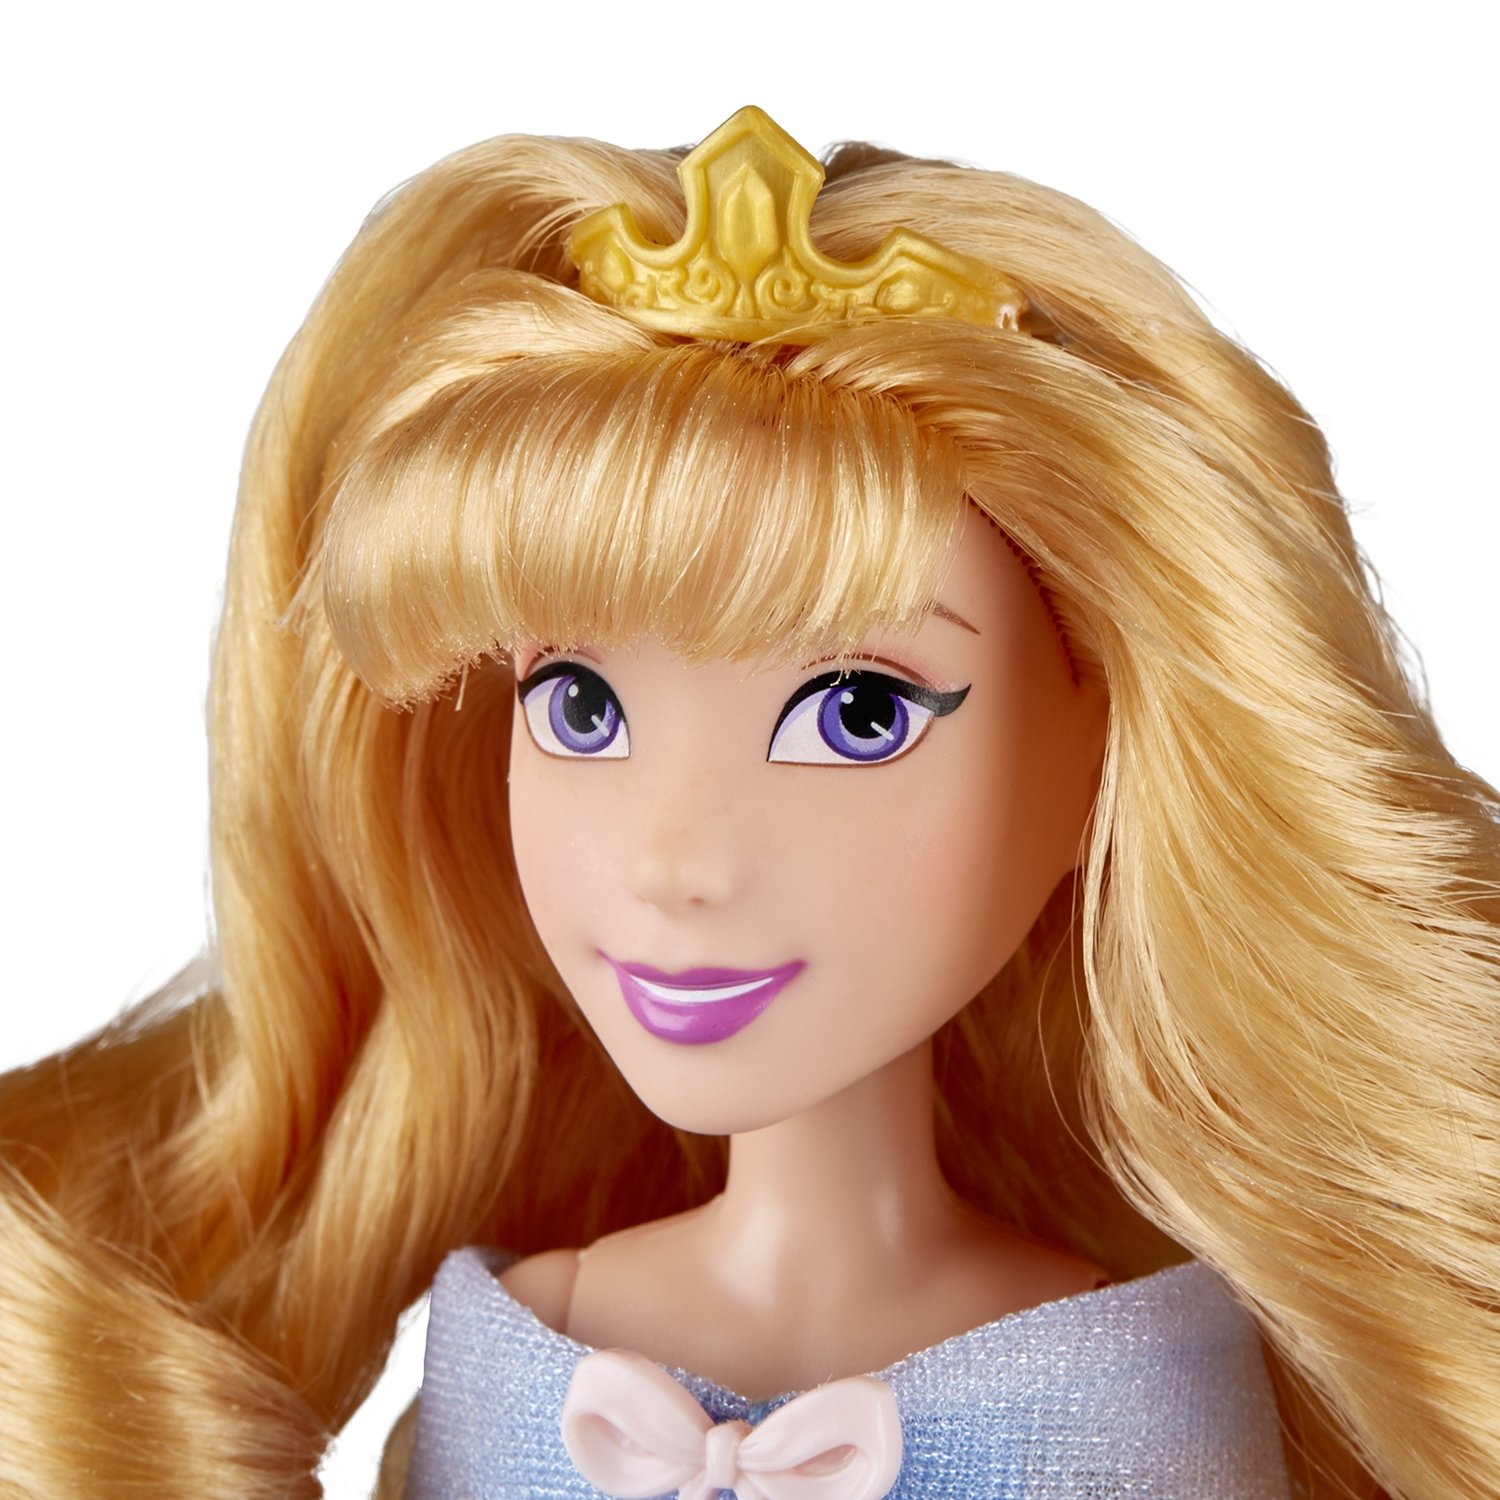 Кукла Disney Princess - Аврора с двумя нарядами, 29 см  